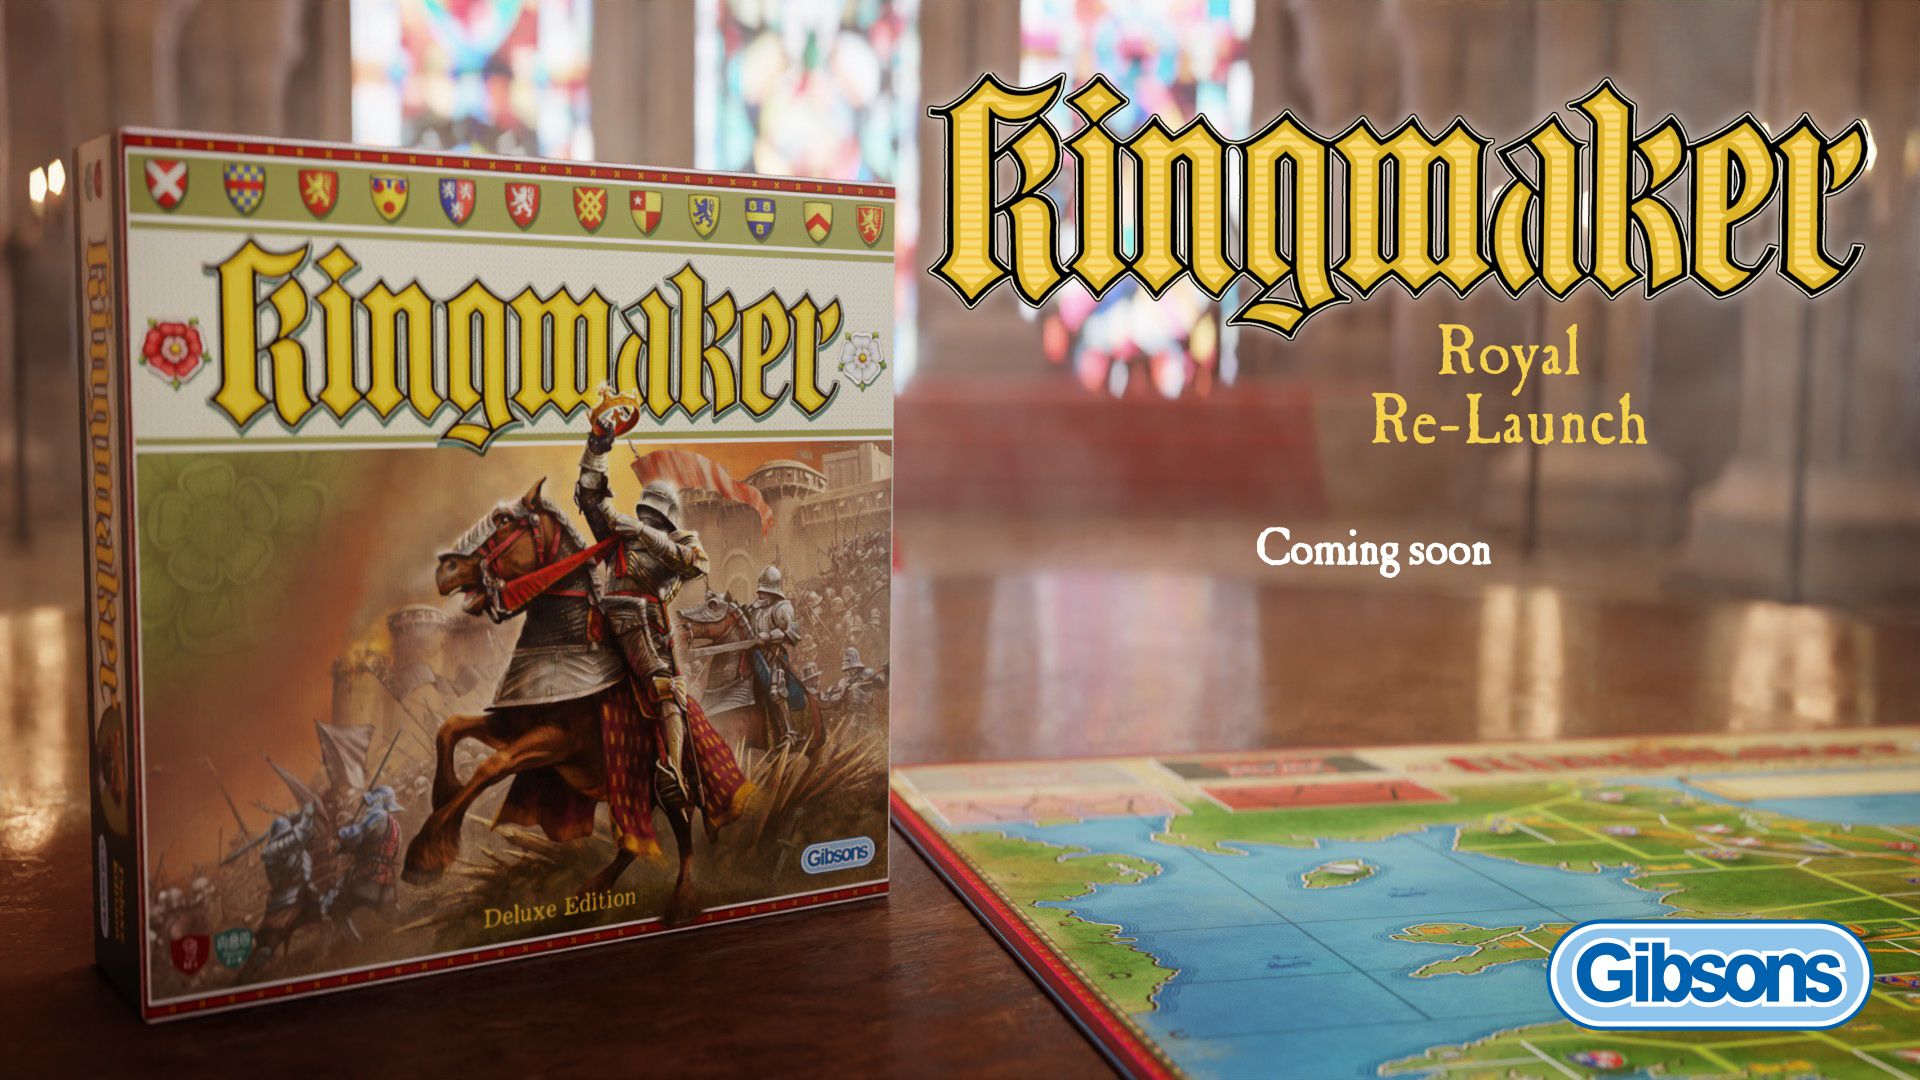 Kingmaker Returns!